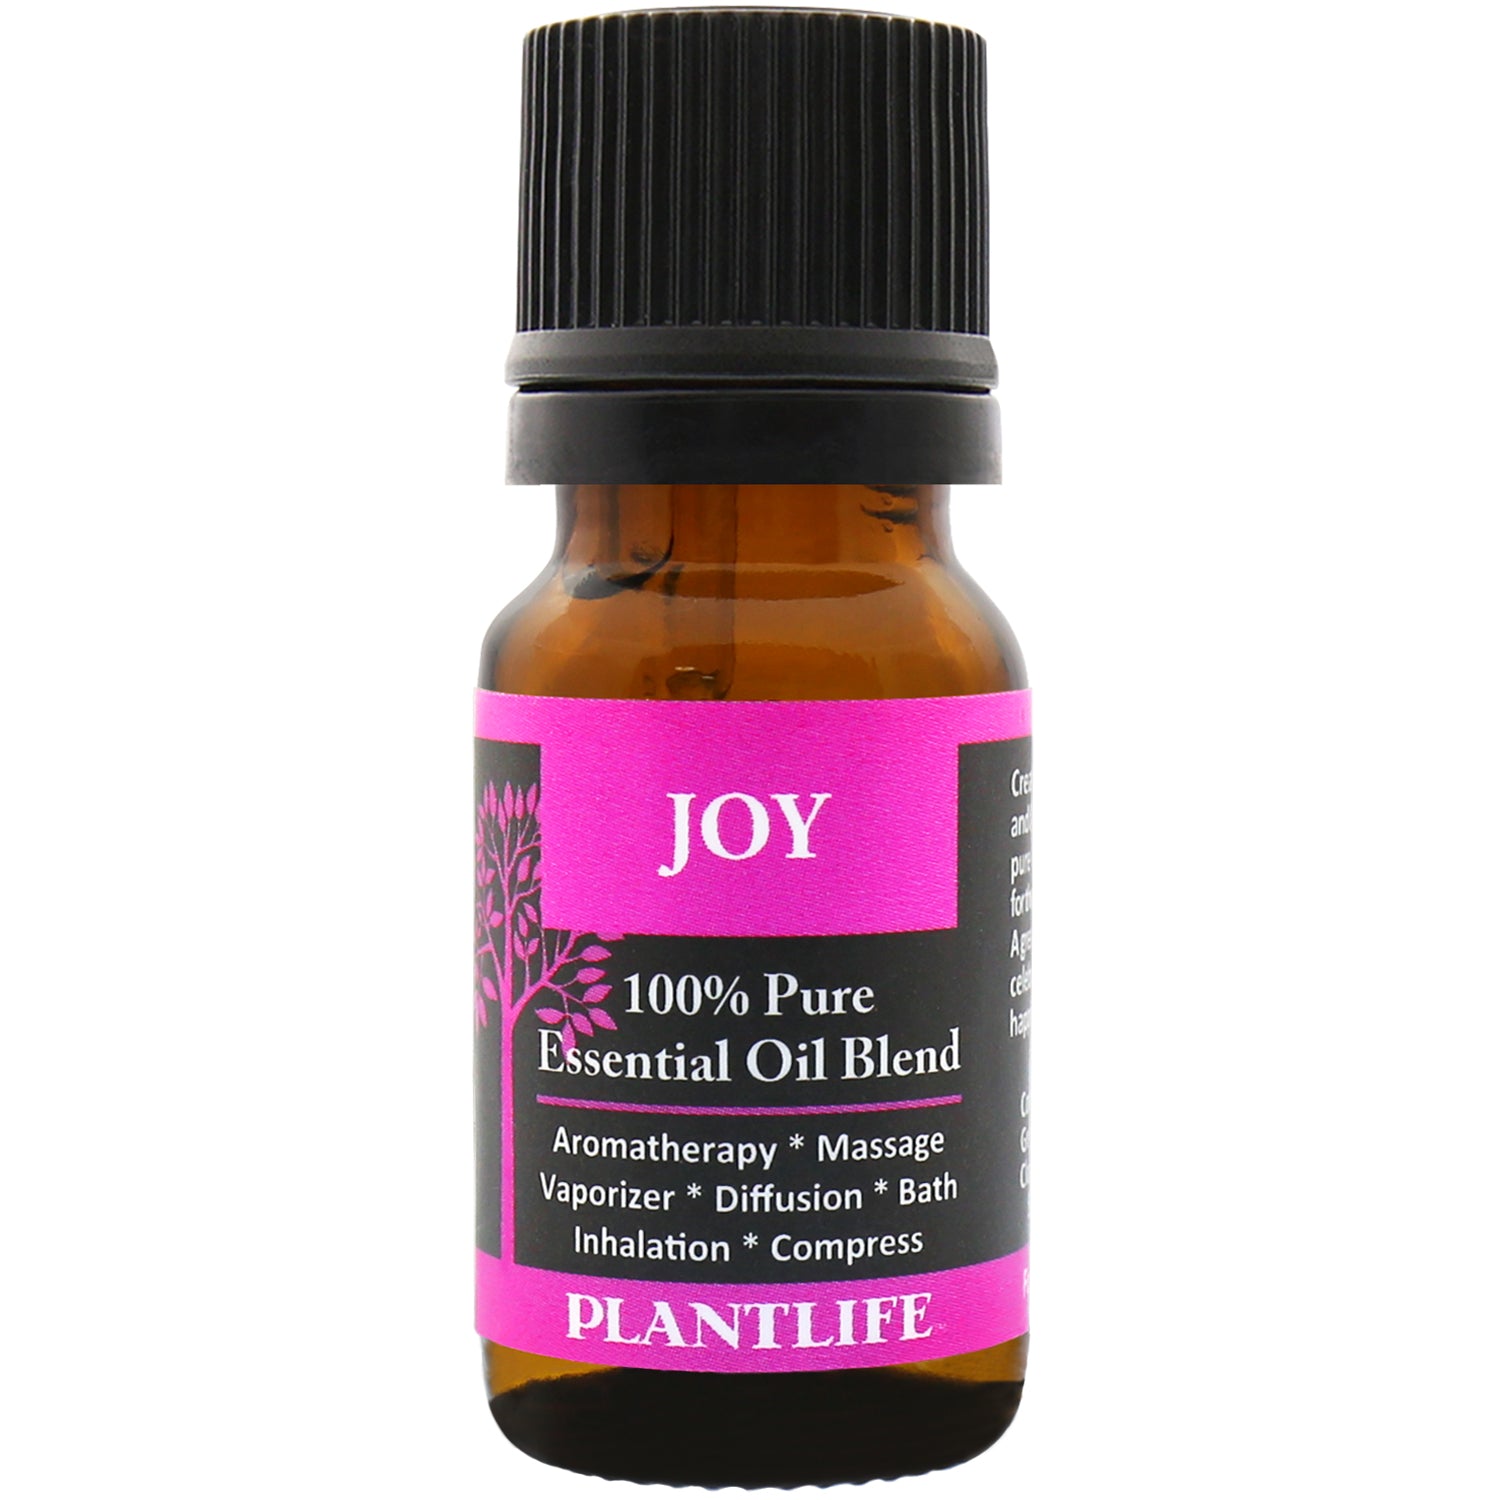 Joy Essential Oil Blend — ScentSationals